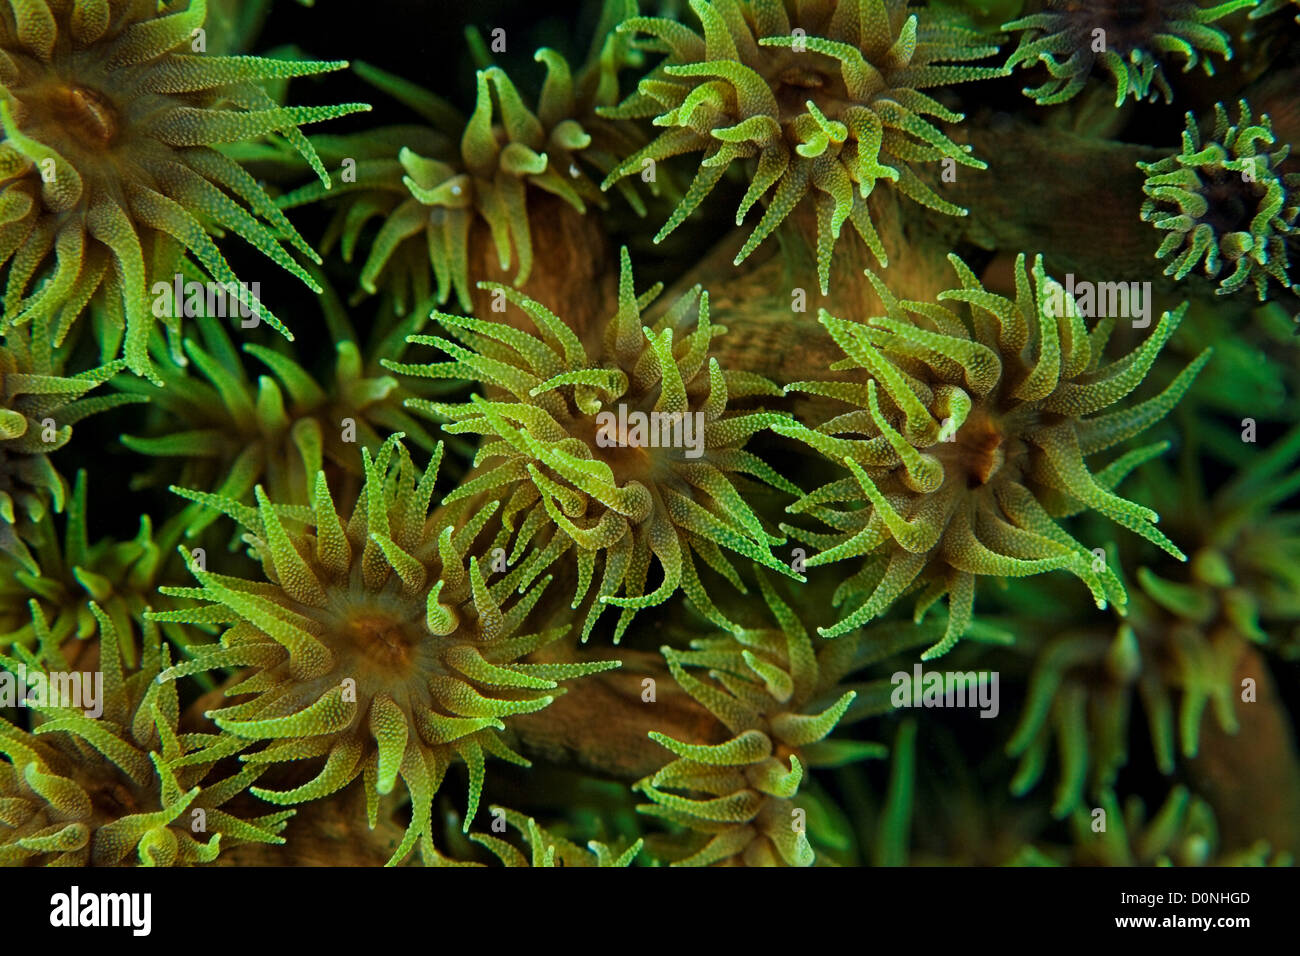 Polyps of black sun coral (Tubastraea micranthus), in the Maldives. Stock Photo